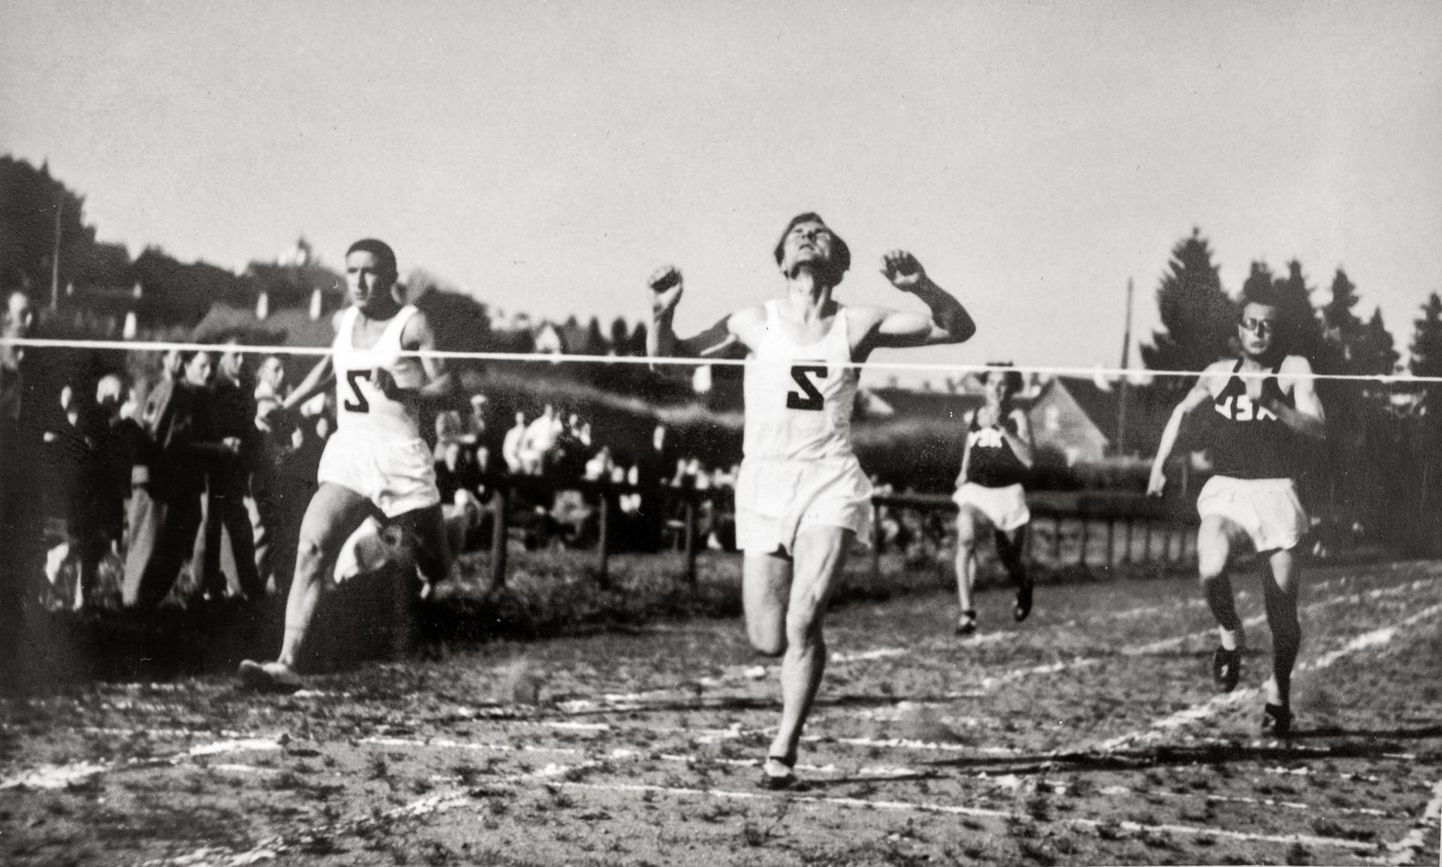 Möödunud sajandi 30. aastatel polnud jooksuvõistlused veel massiüritusteks saanud. 1938. aasta suvel peetud Viljandi ja Valga võistlusel võitis 100 meetri jooksu Valter Kalam, kel oli Viljandi spordielus tähtis roll.